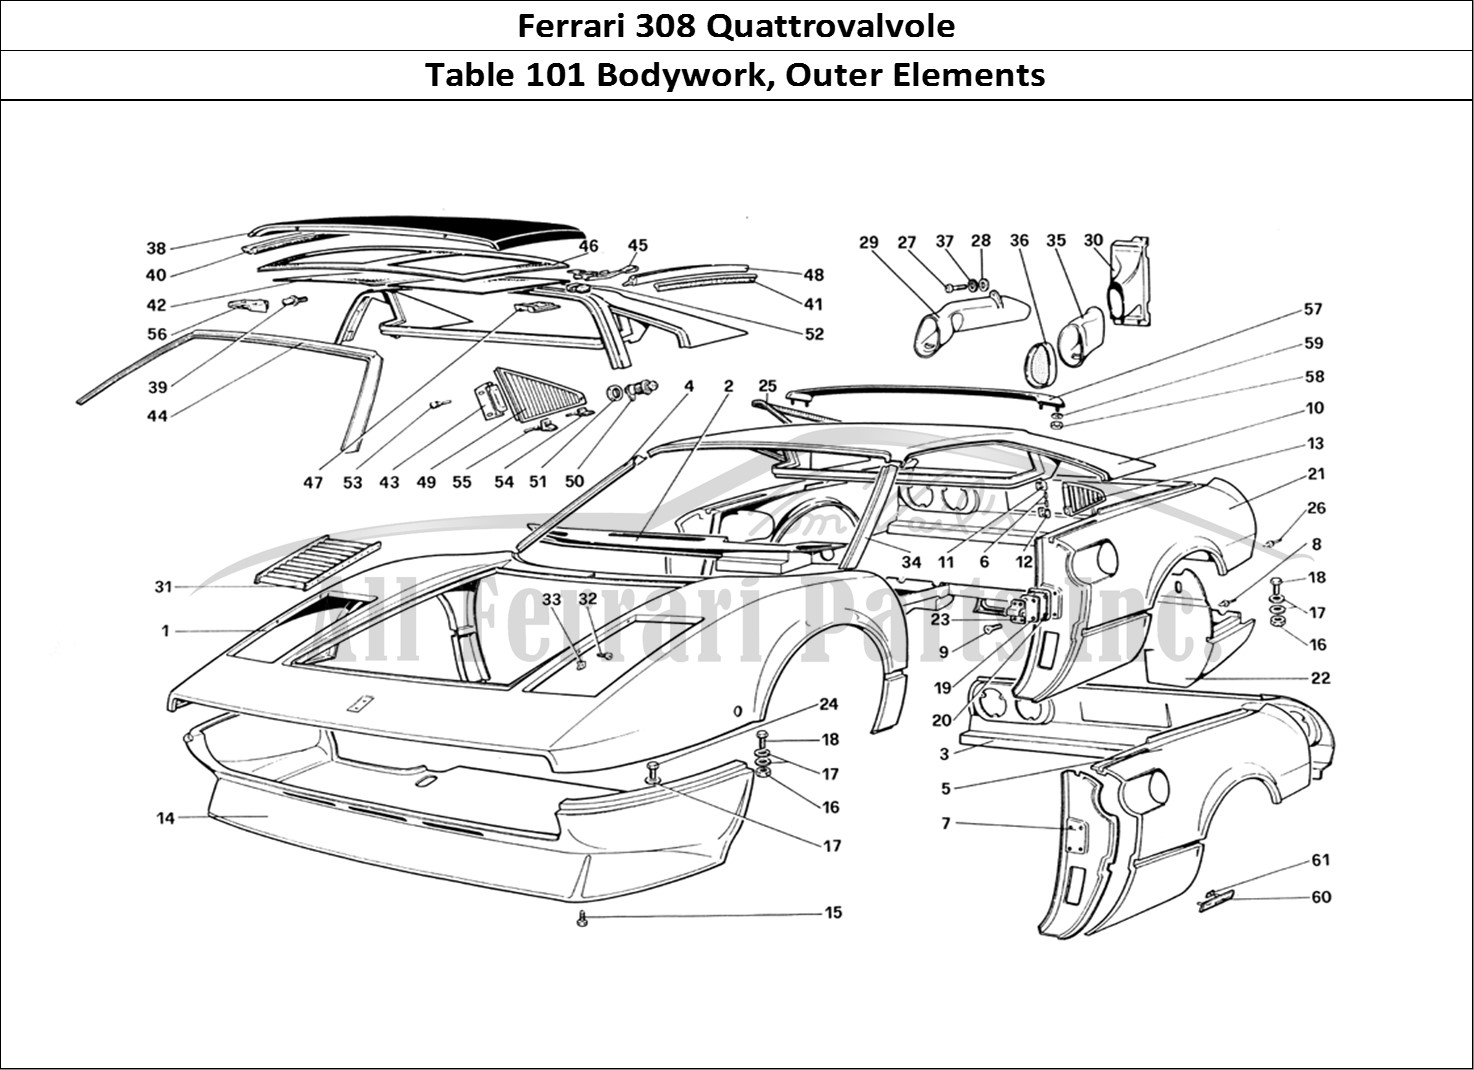 Ferrari Parts Ferrari 308 Quattrovalvole (1985) Page 101 Body Shell - Outer Elemen